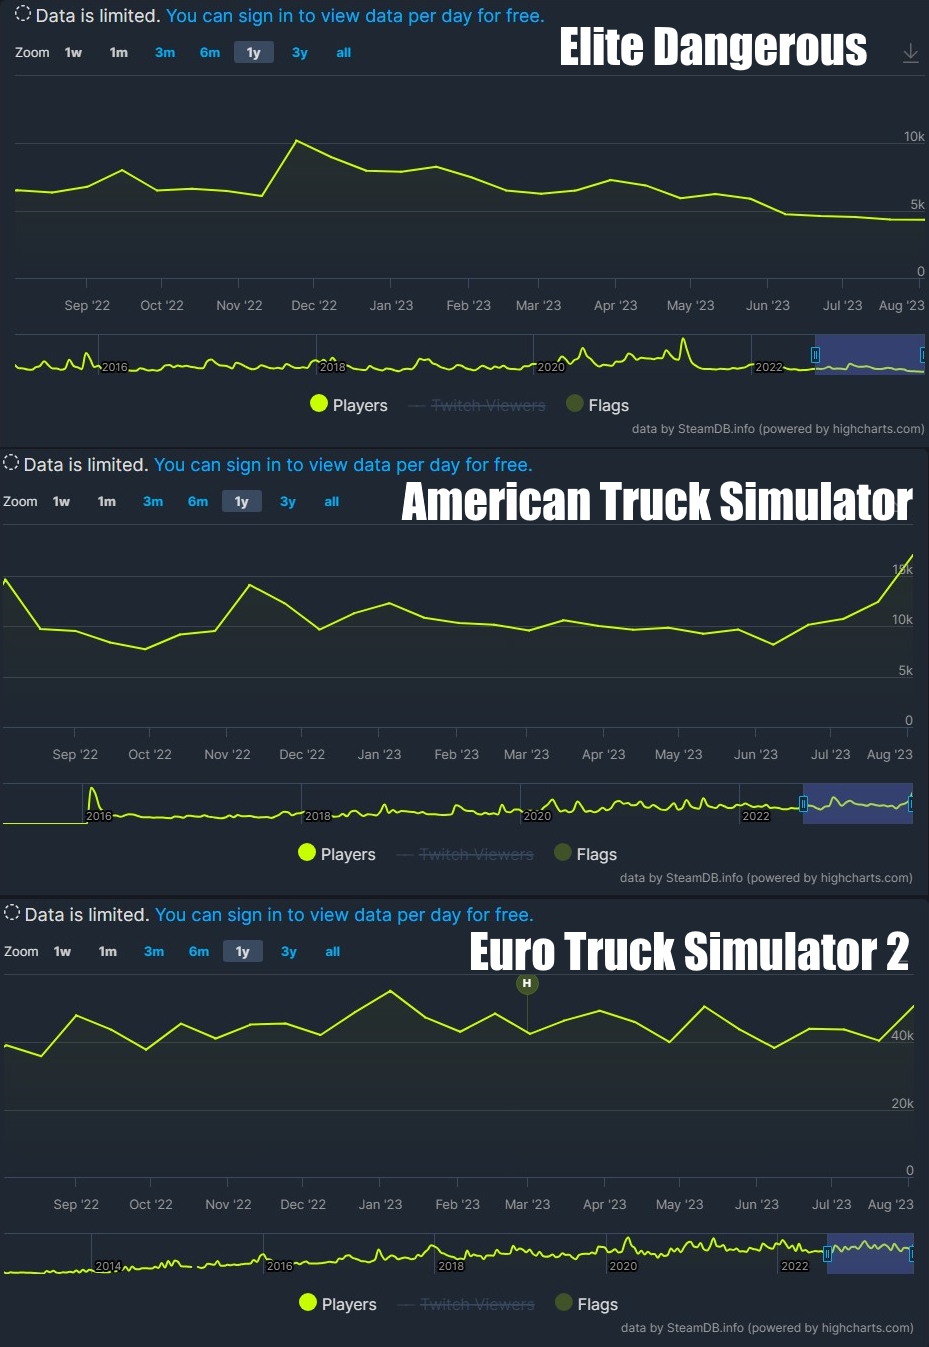 Elite Dangerous - American Truck Simulator - Euro Truck Simulator 2